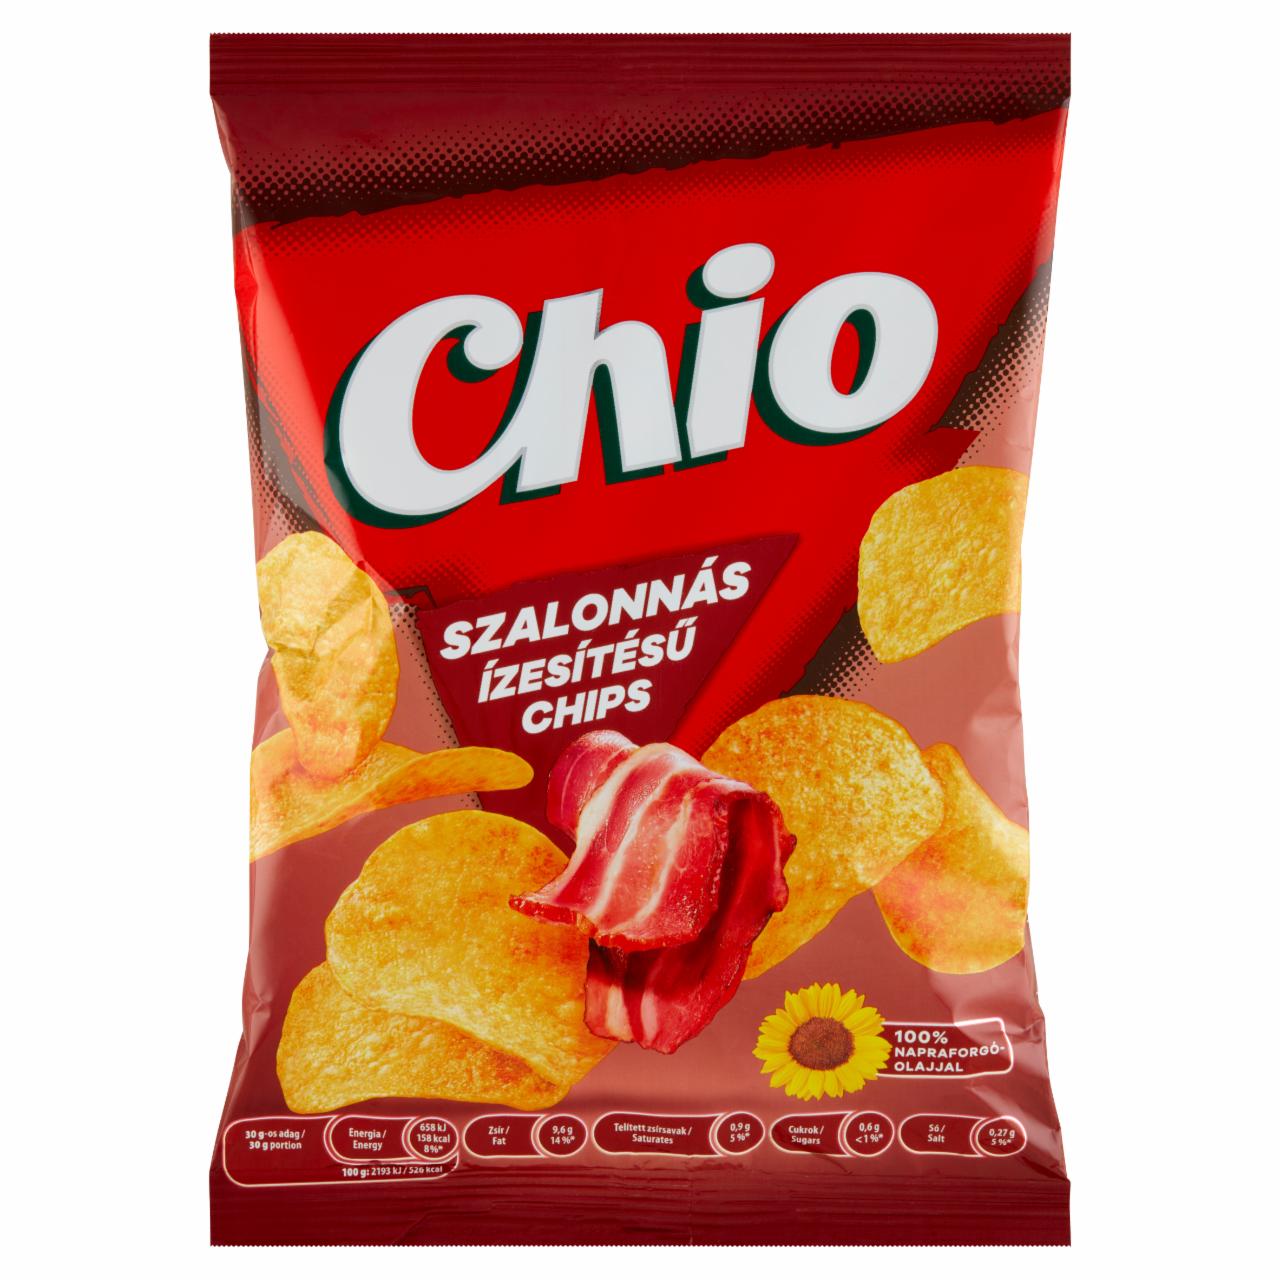 Képek - Chio szalonnás ízesítésű chips 70 g